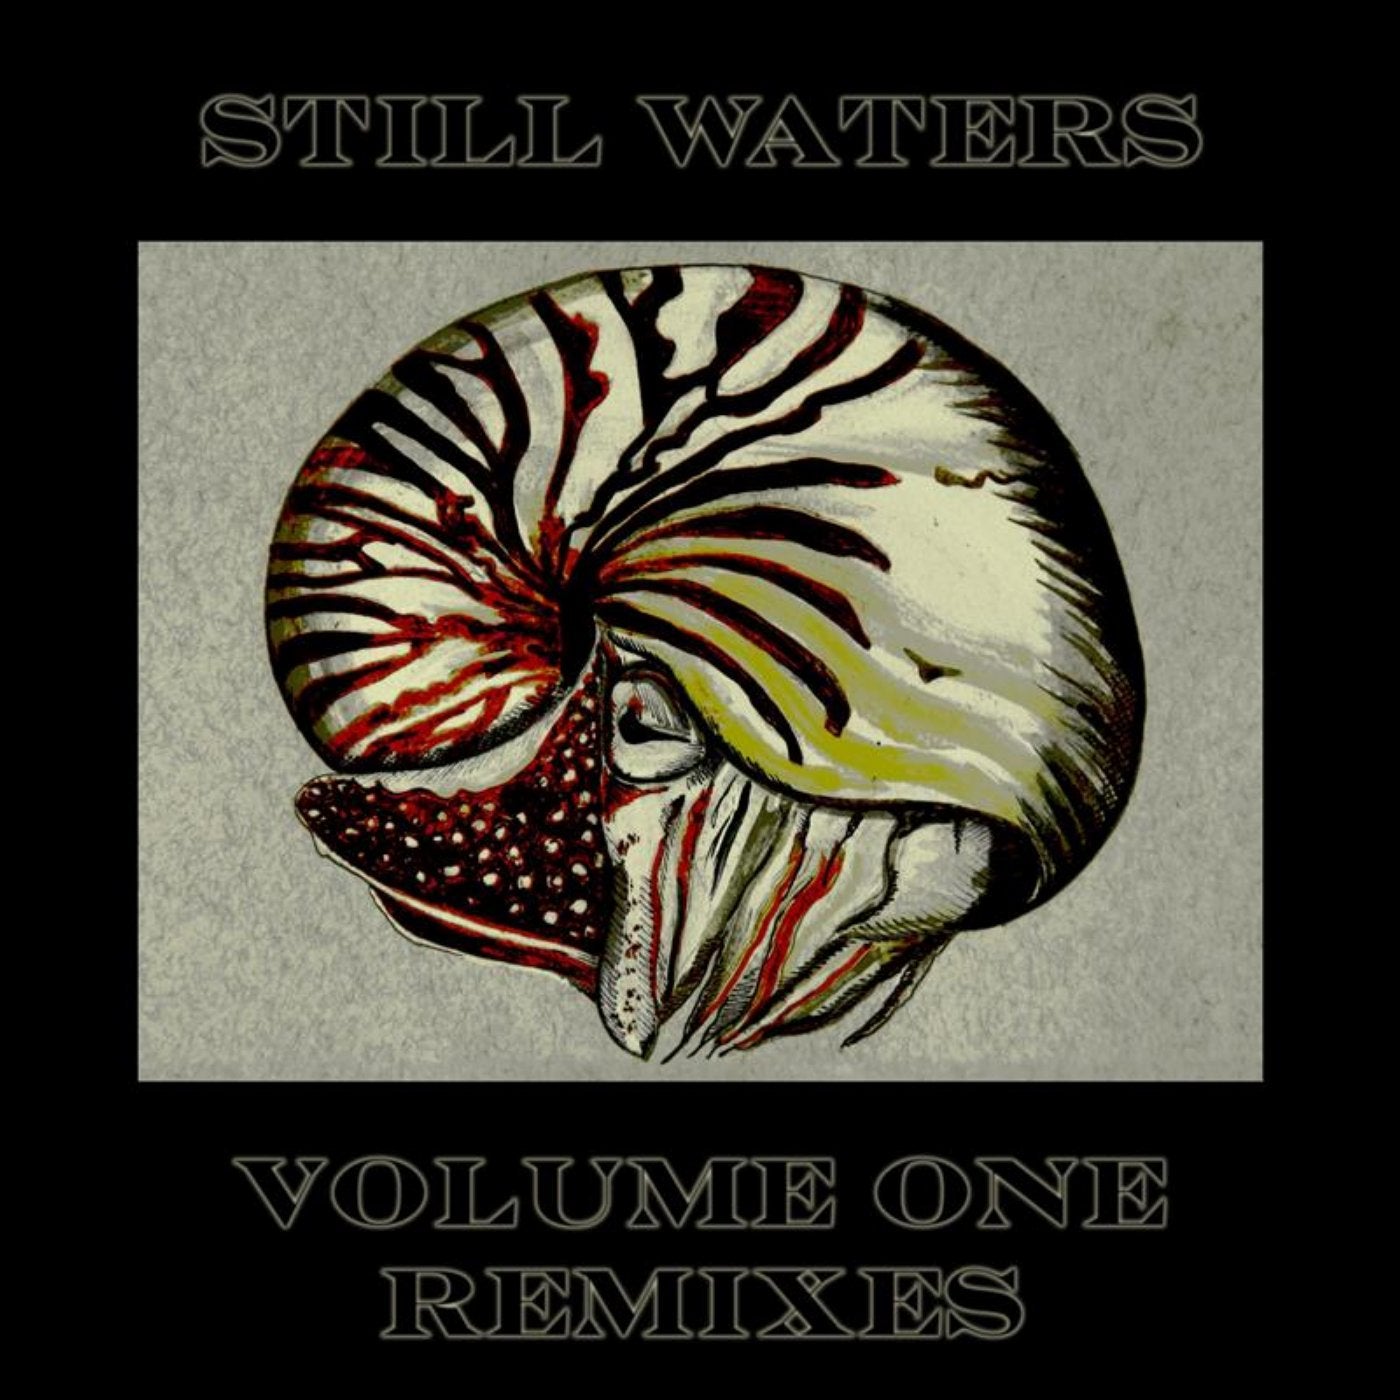 Volume One Remixes